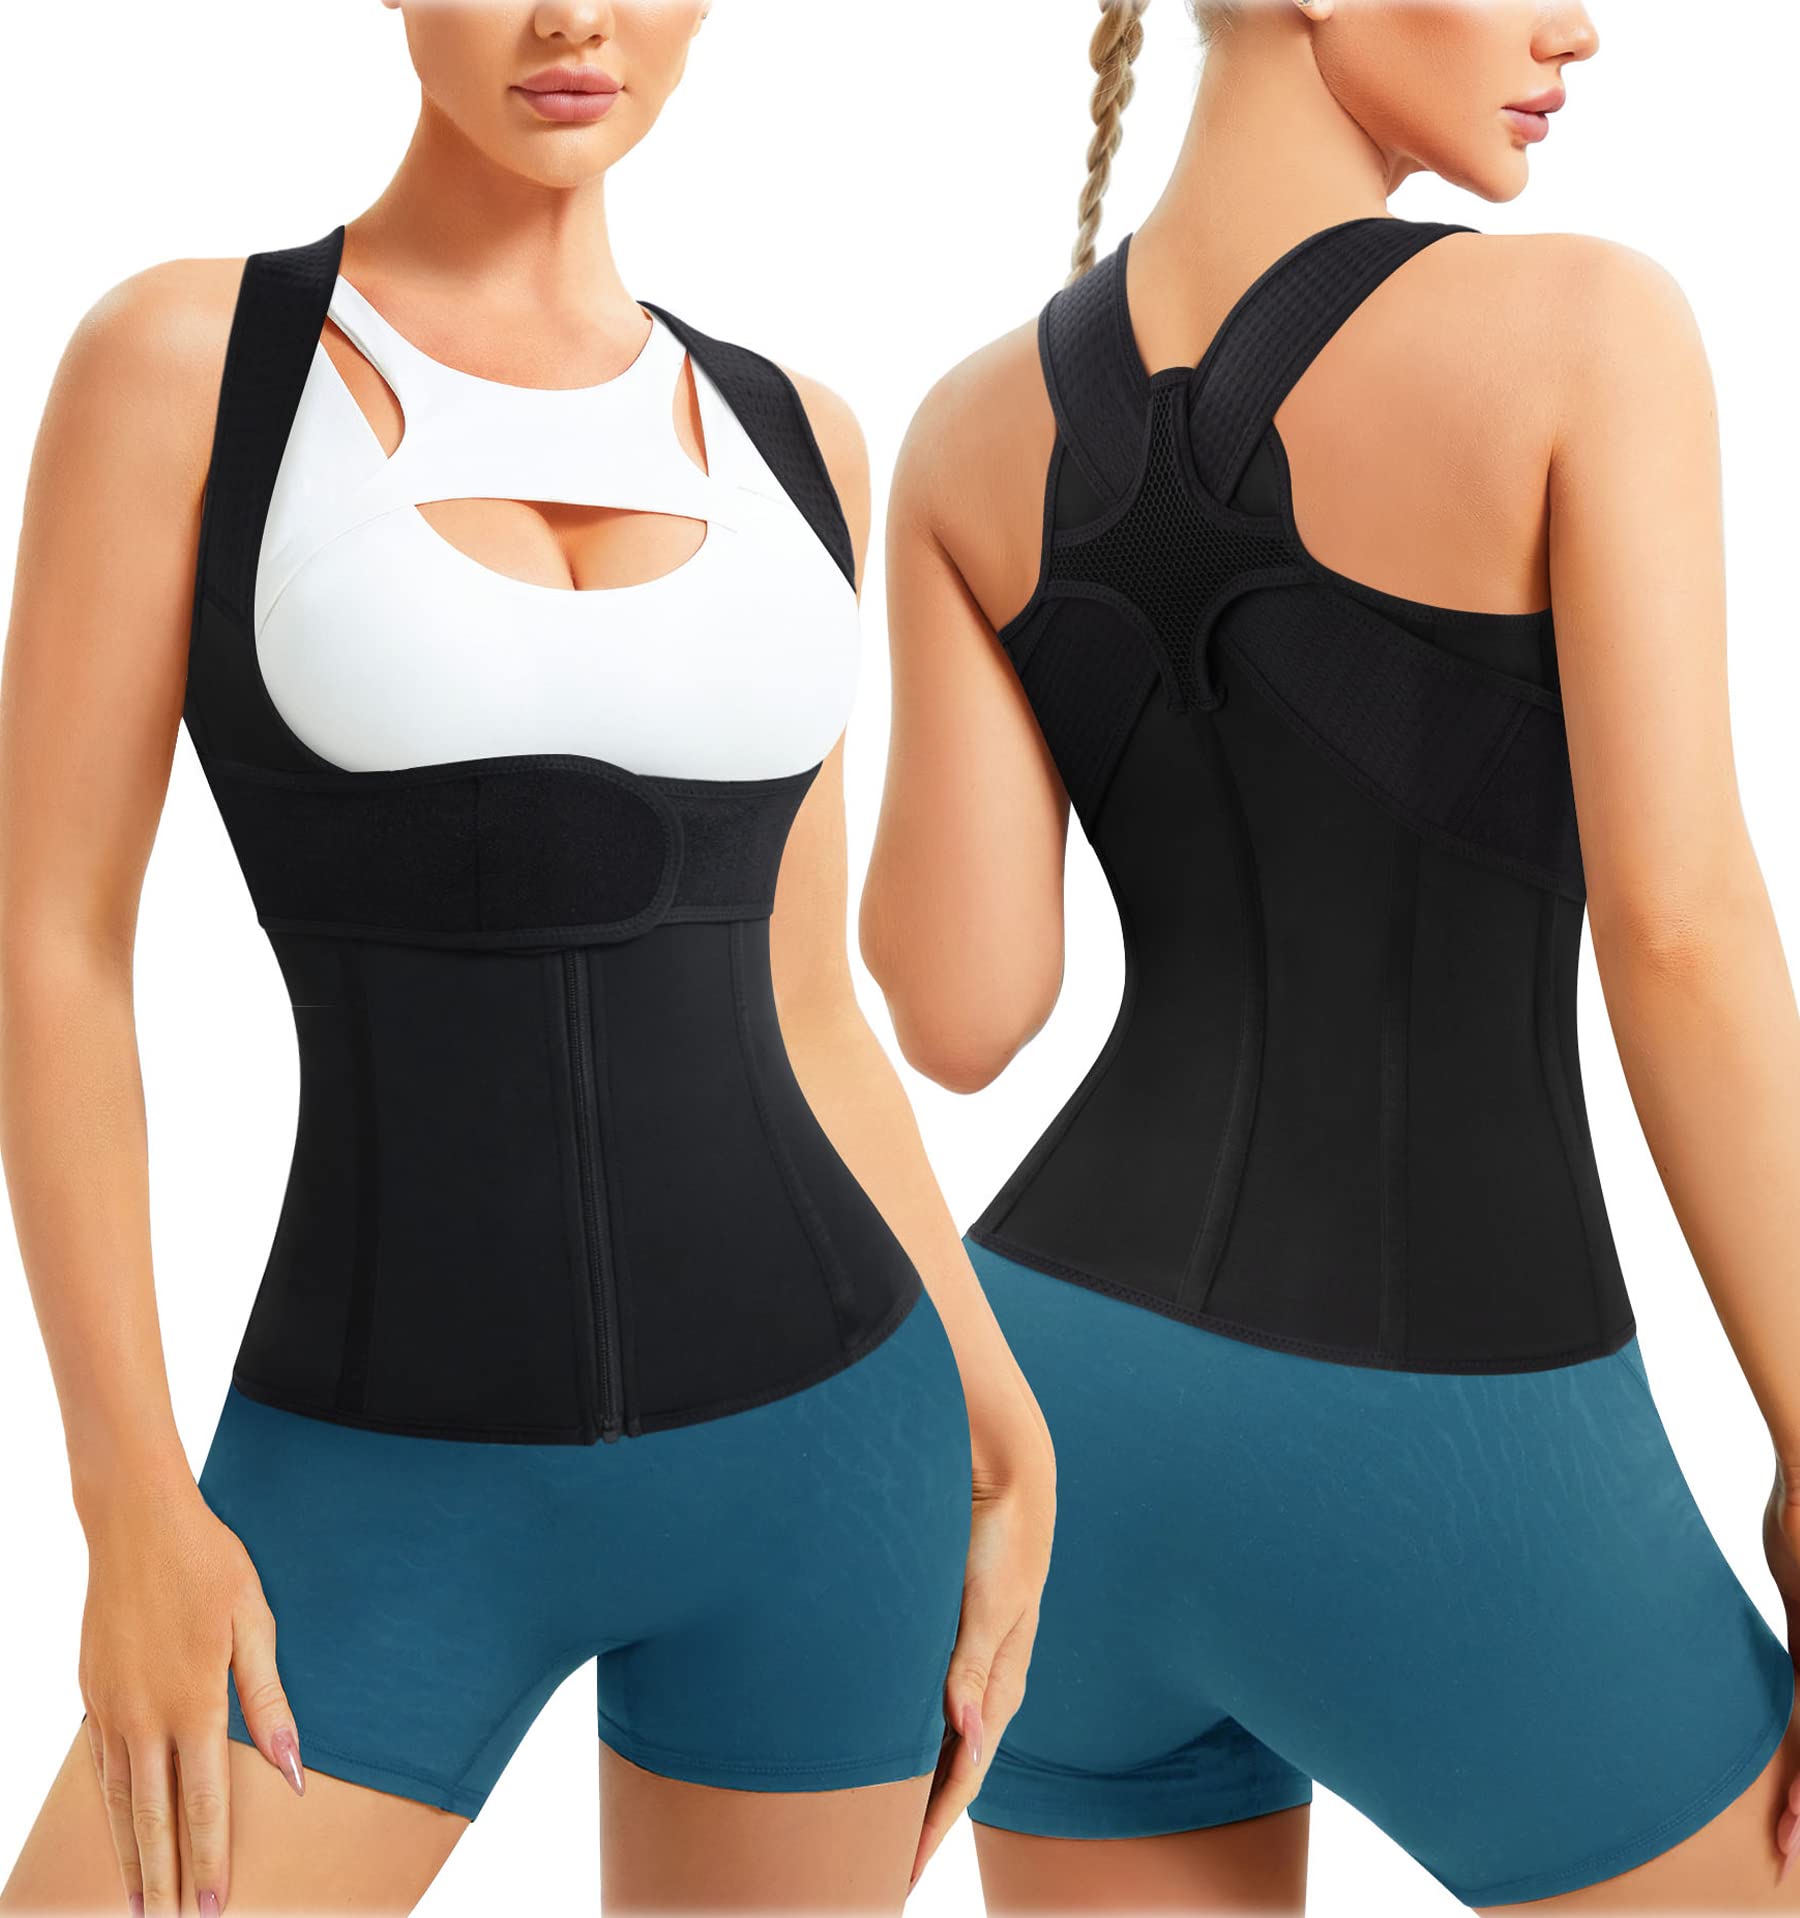 URSEXYLY Back Brace For Women Waist Trainer Vest Tummy Control Body Shaper  Back Straightener Posture Corrector Spinal Neck Shoulder Support Adjustable  Posture Trainer(M Black) Medium Black